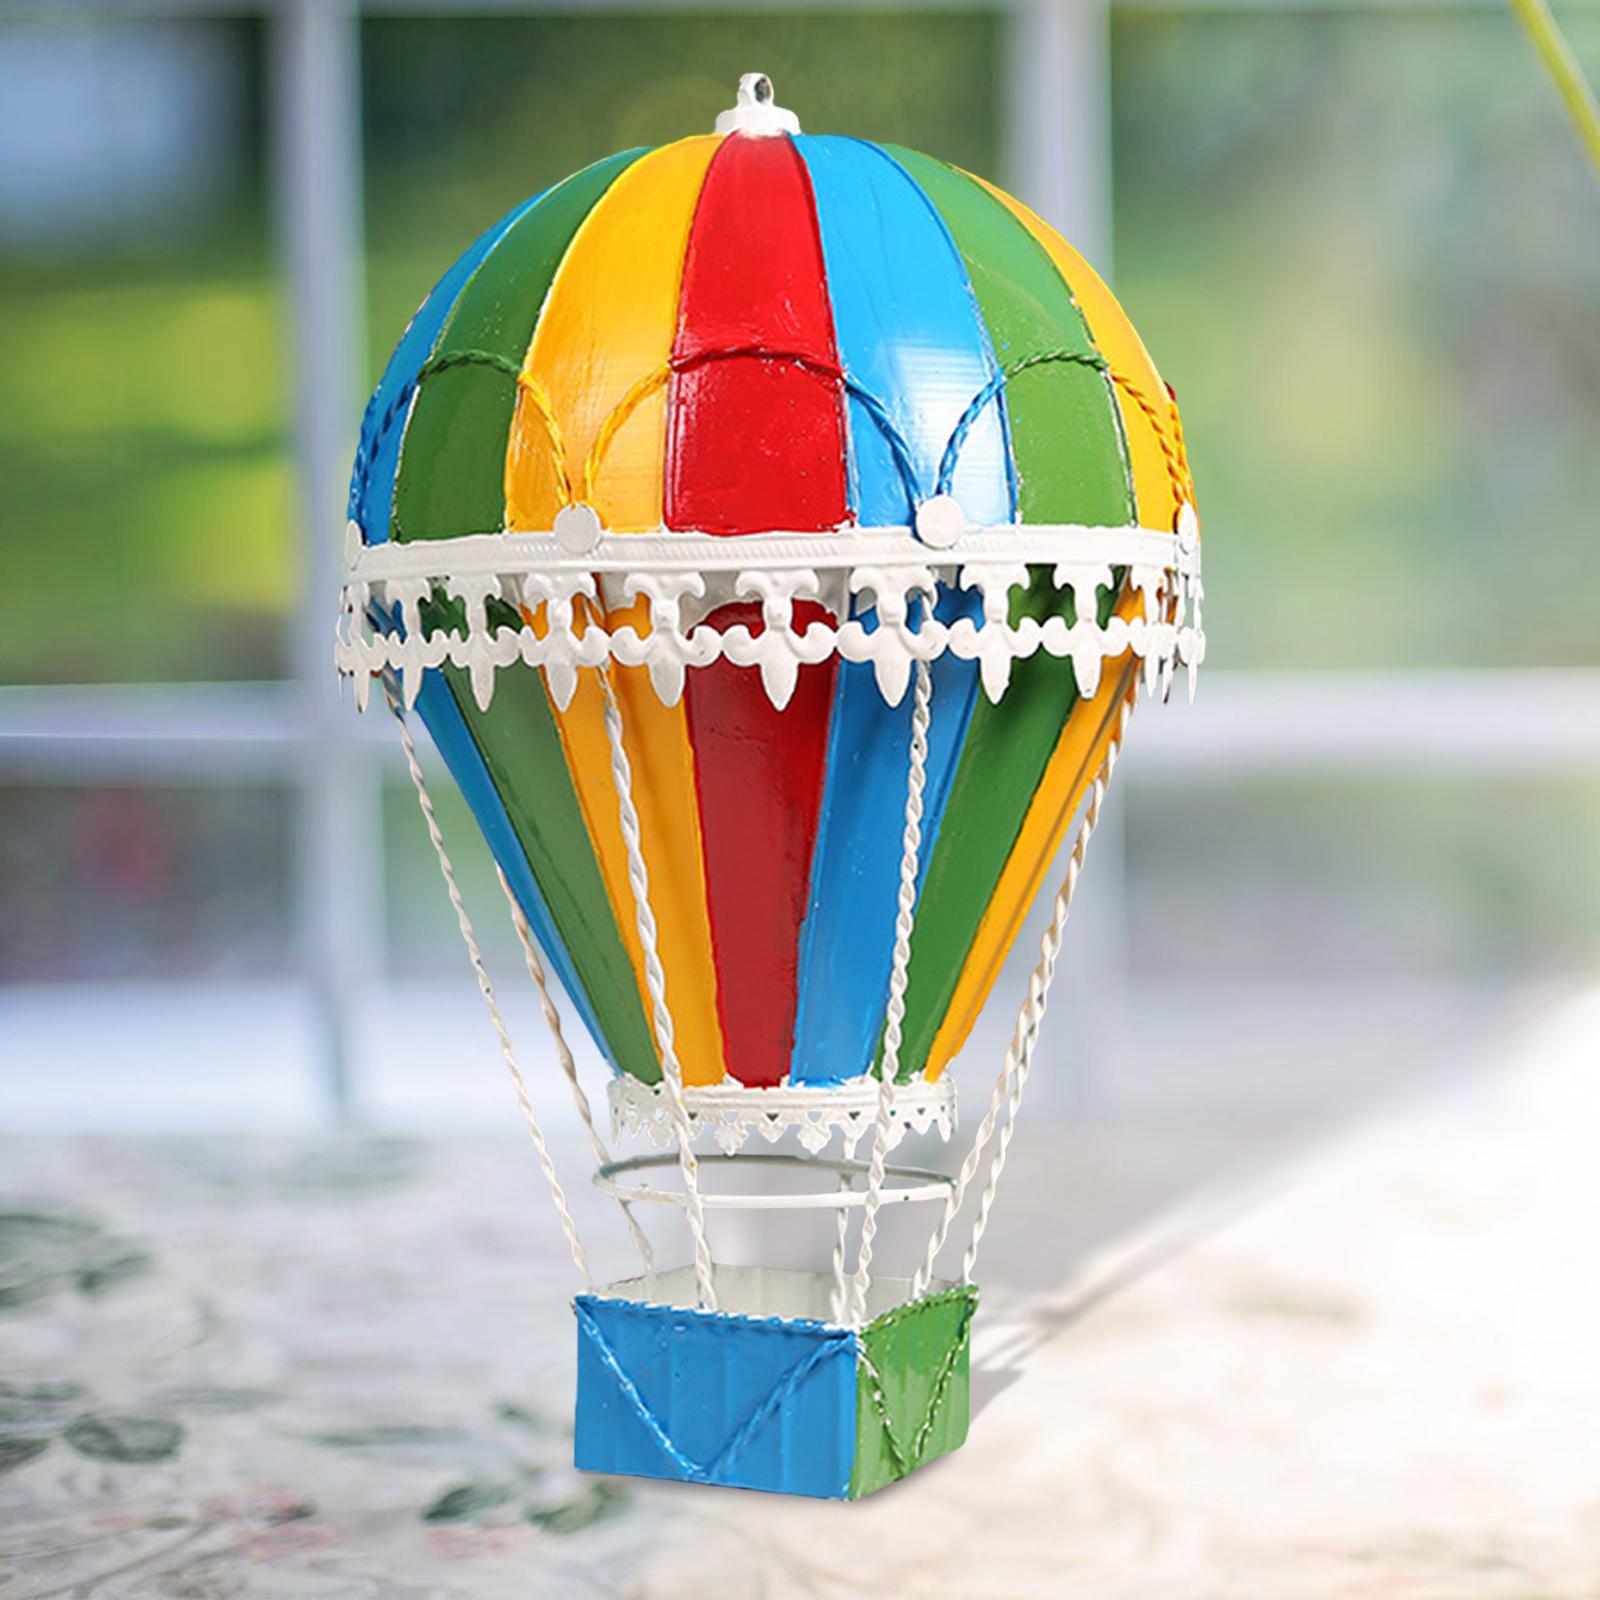 Hot Air Balloon Ornament Pendant Decorative Home Desktop Scene Layout Four Colors